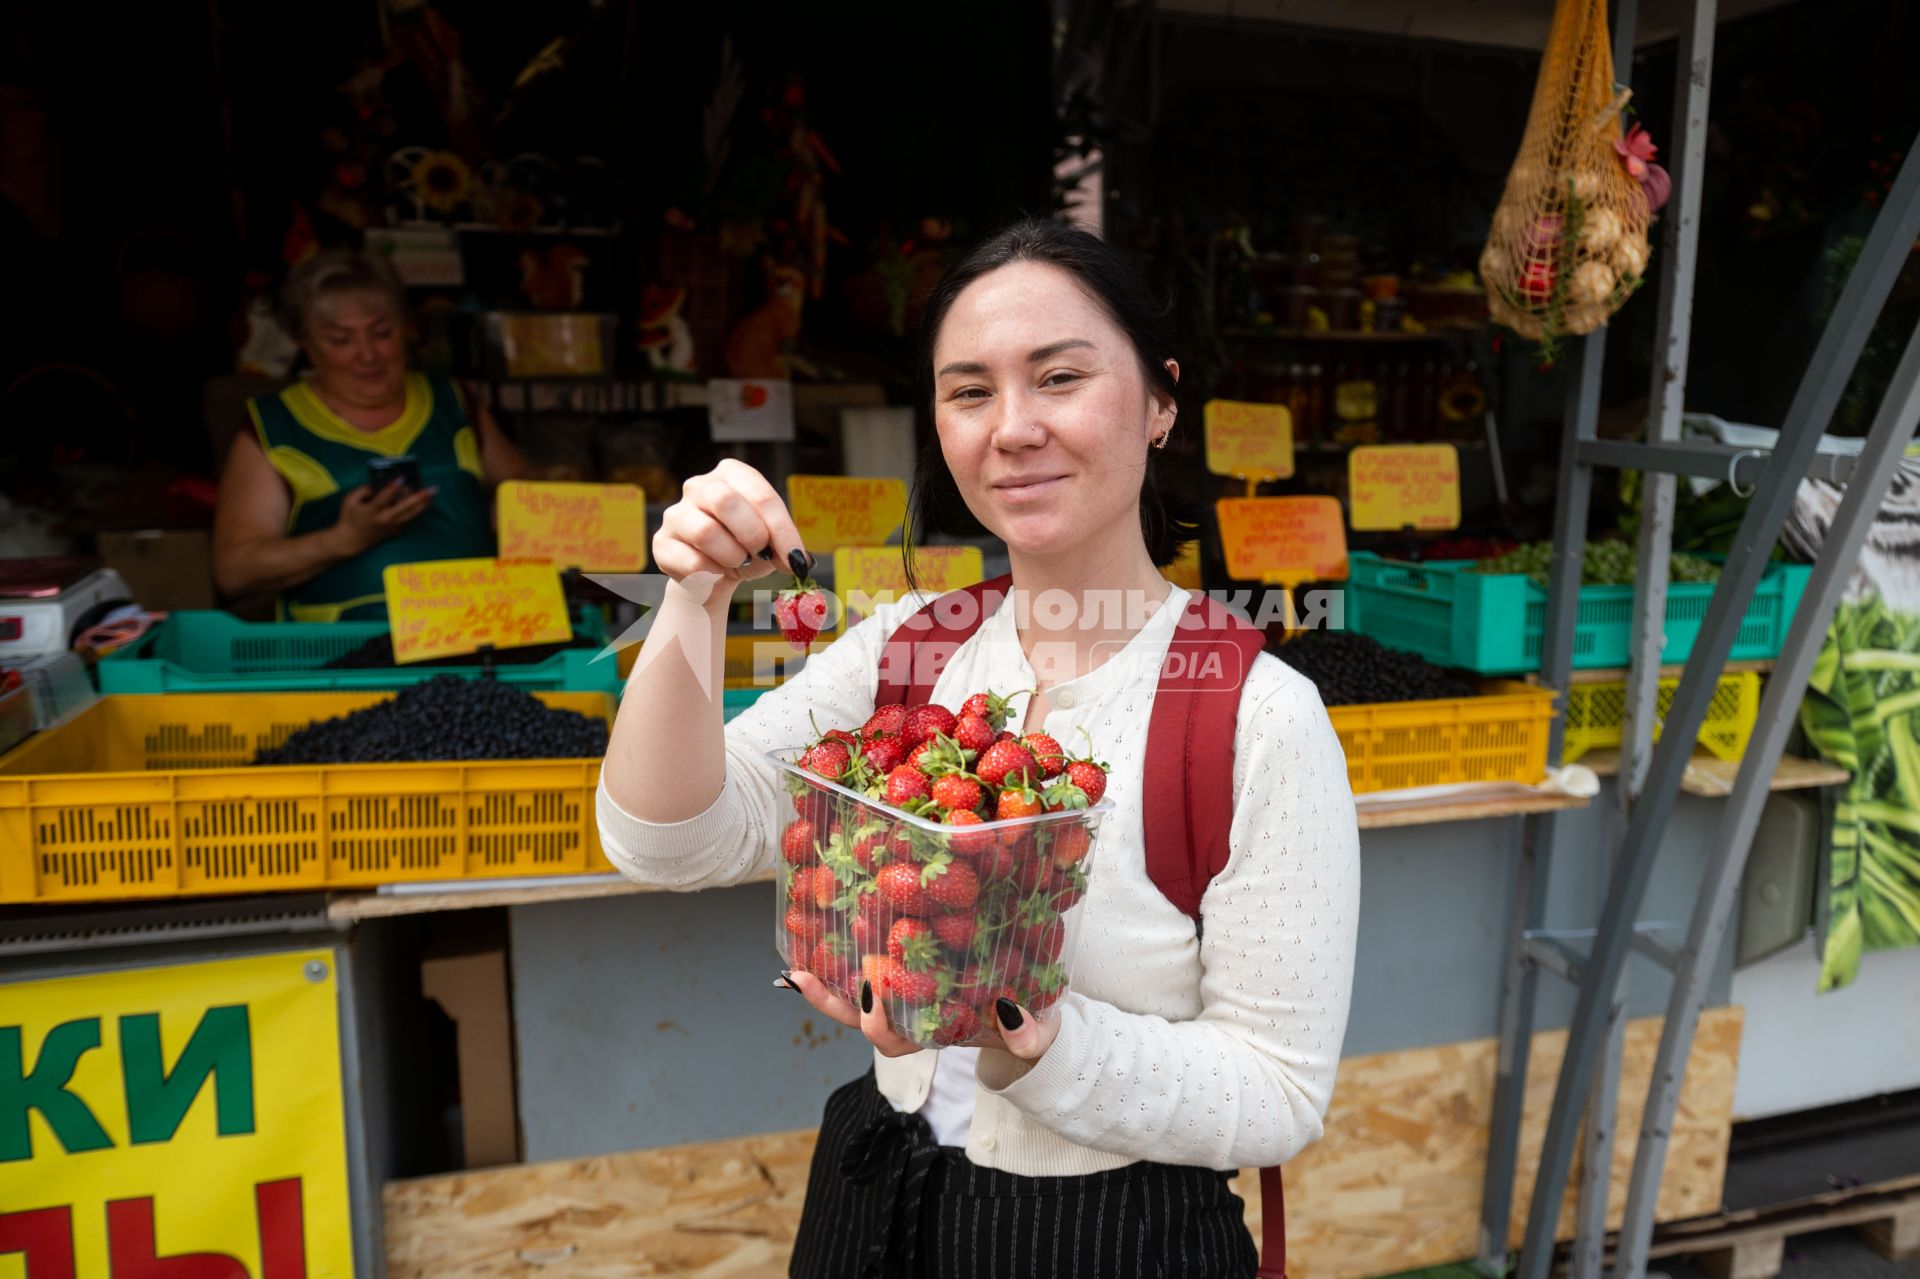 Санкт-Петербург. Девушка держит в руках лоток с клубникой на Сенном рынке.